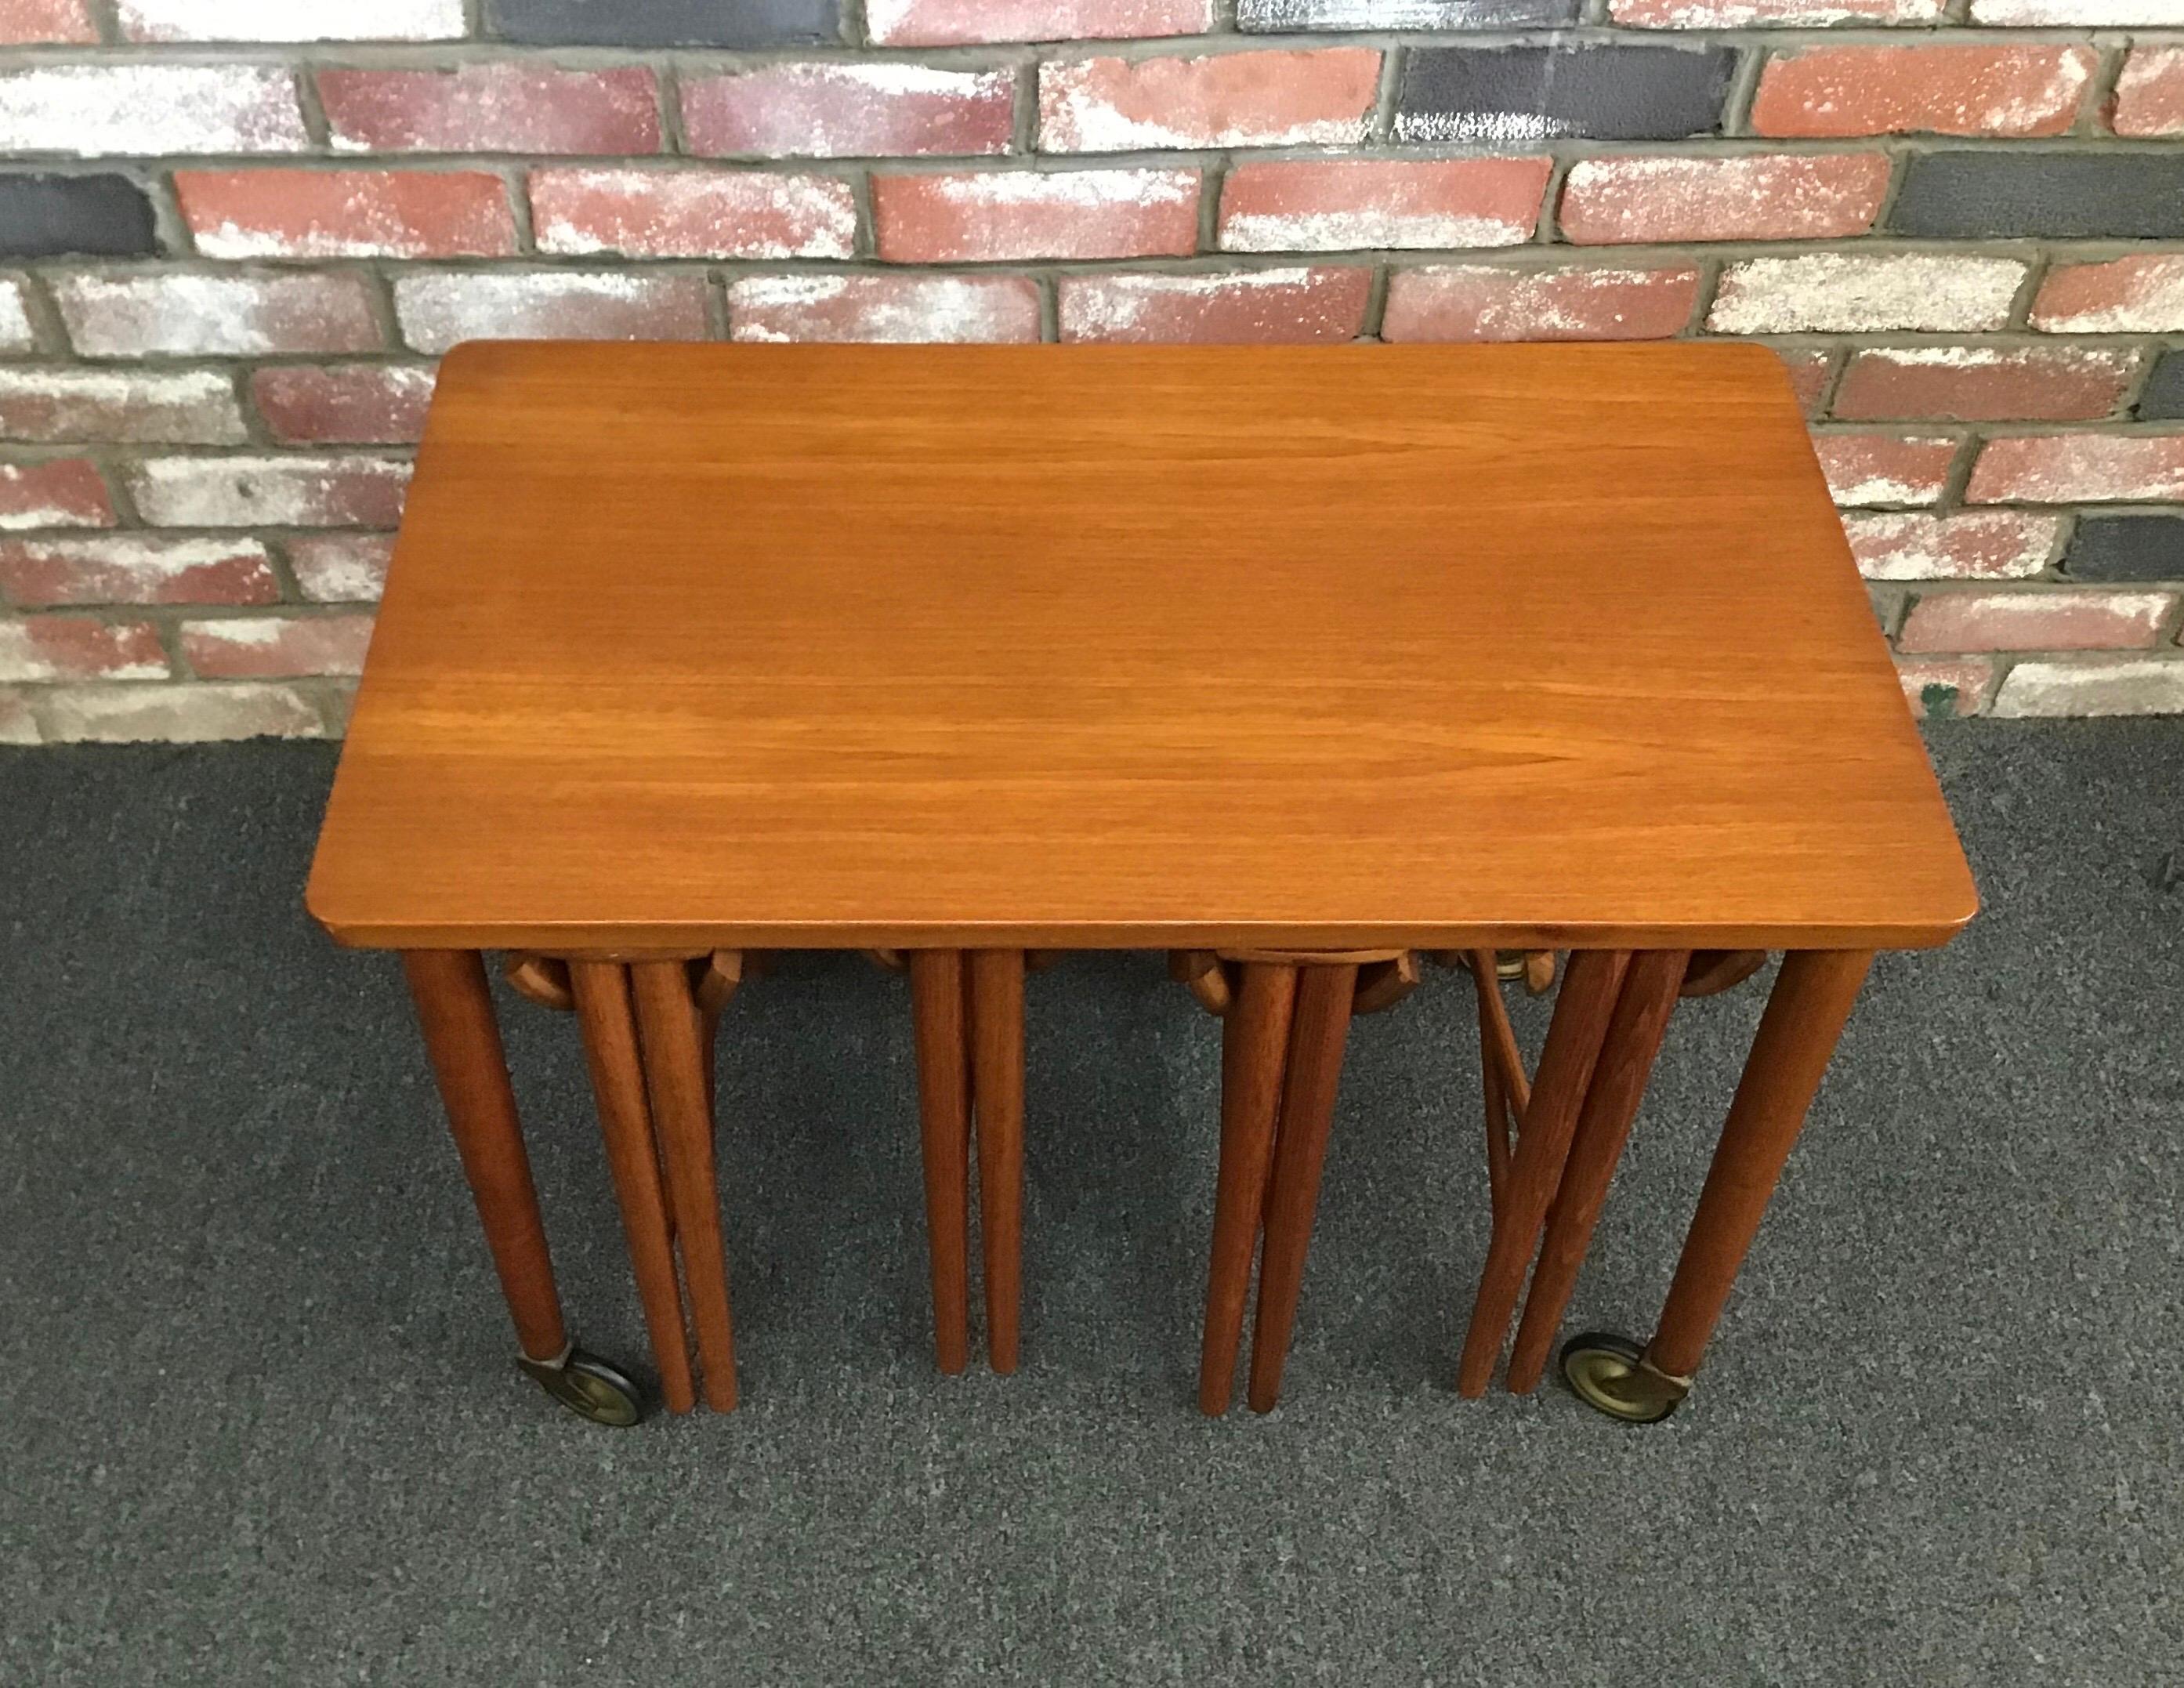 Ensemble ingénieux de cinq tables gigognes danoises modernes par Carlo Jensen pour Hundevad, vers les années 1950. Une très belle table d'appoint rectangulaire en teck (sur roulettes amovibles) permet de ranger quatre petites tables rondes pliantes